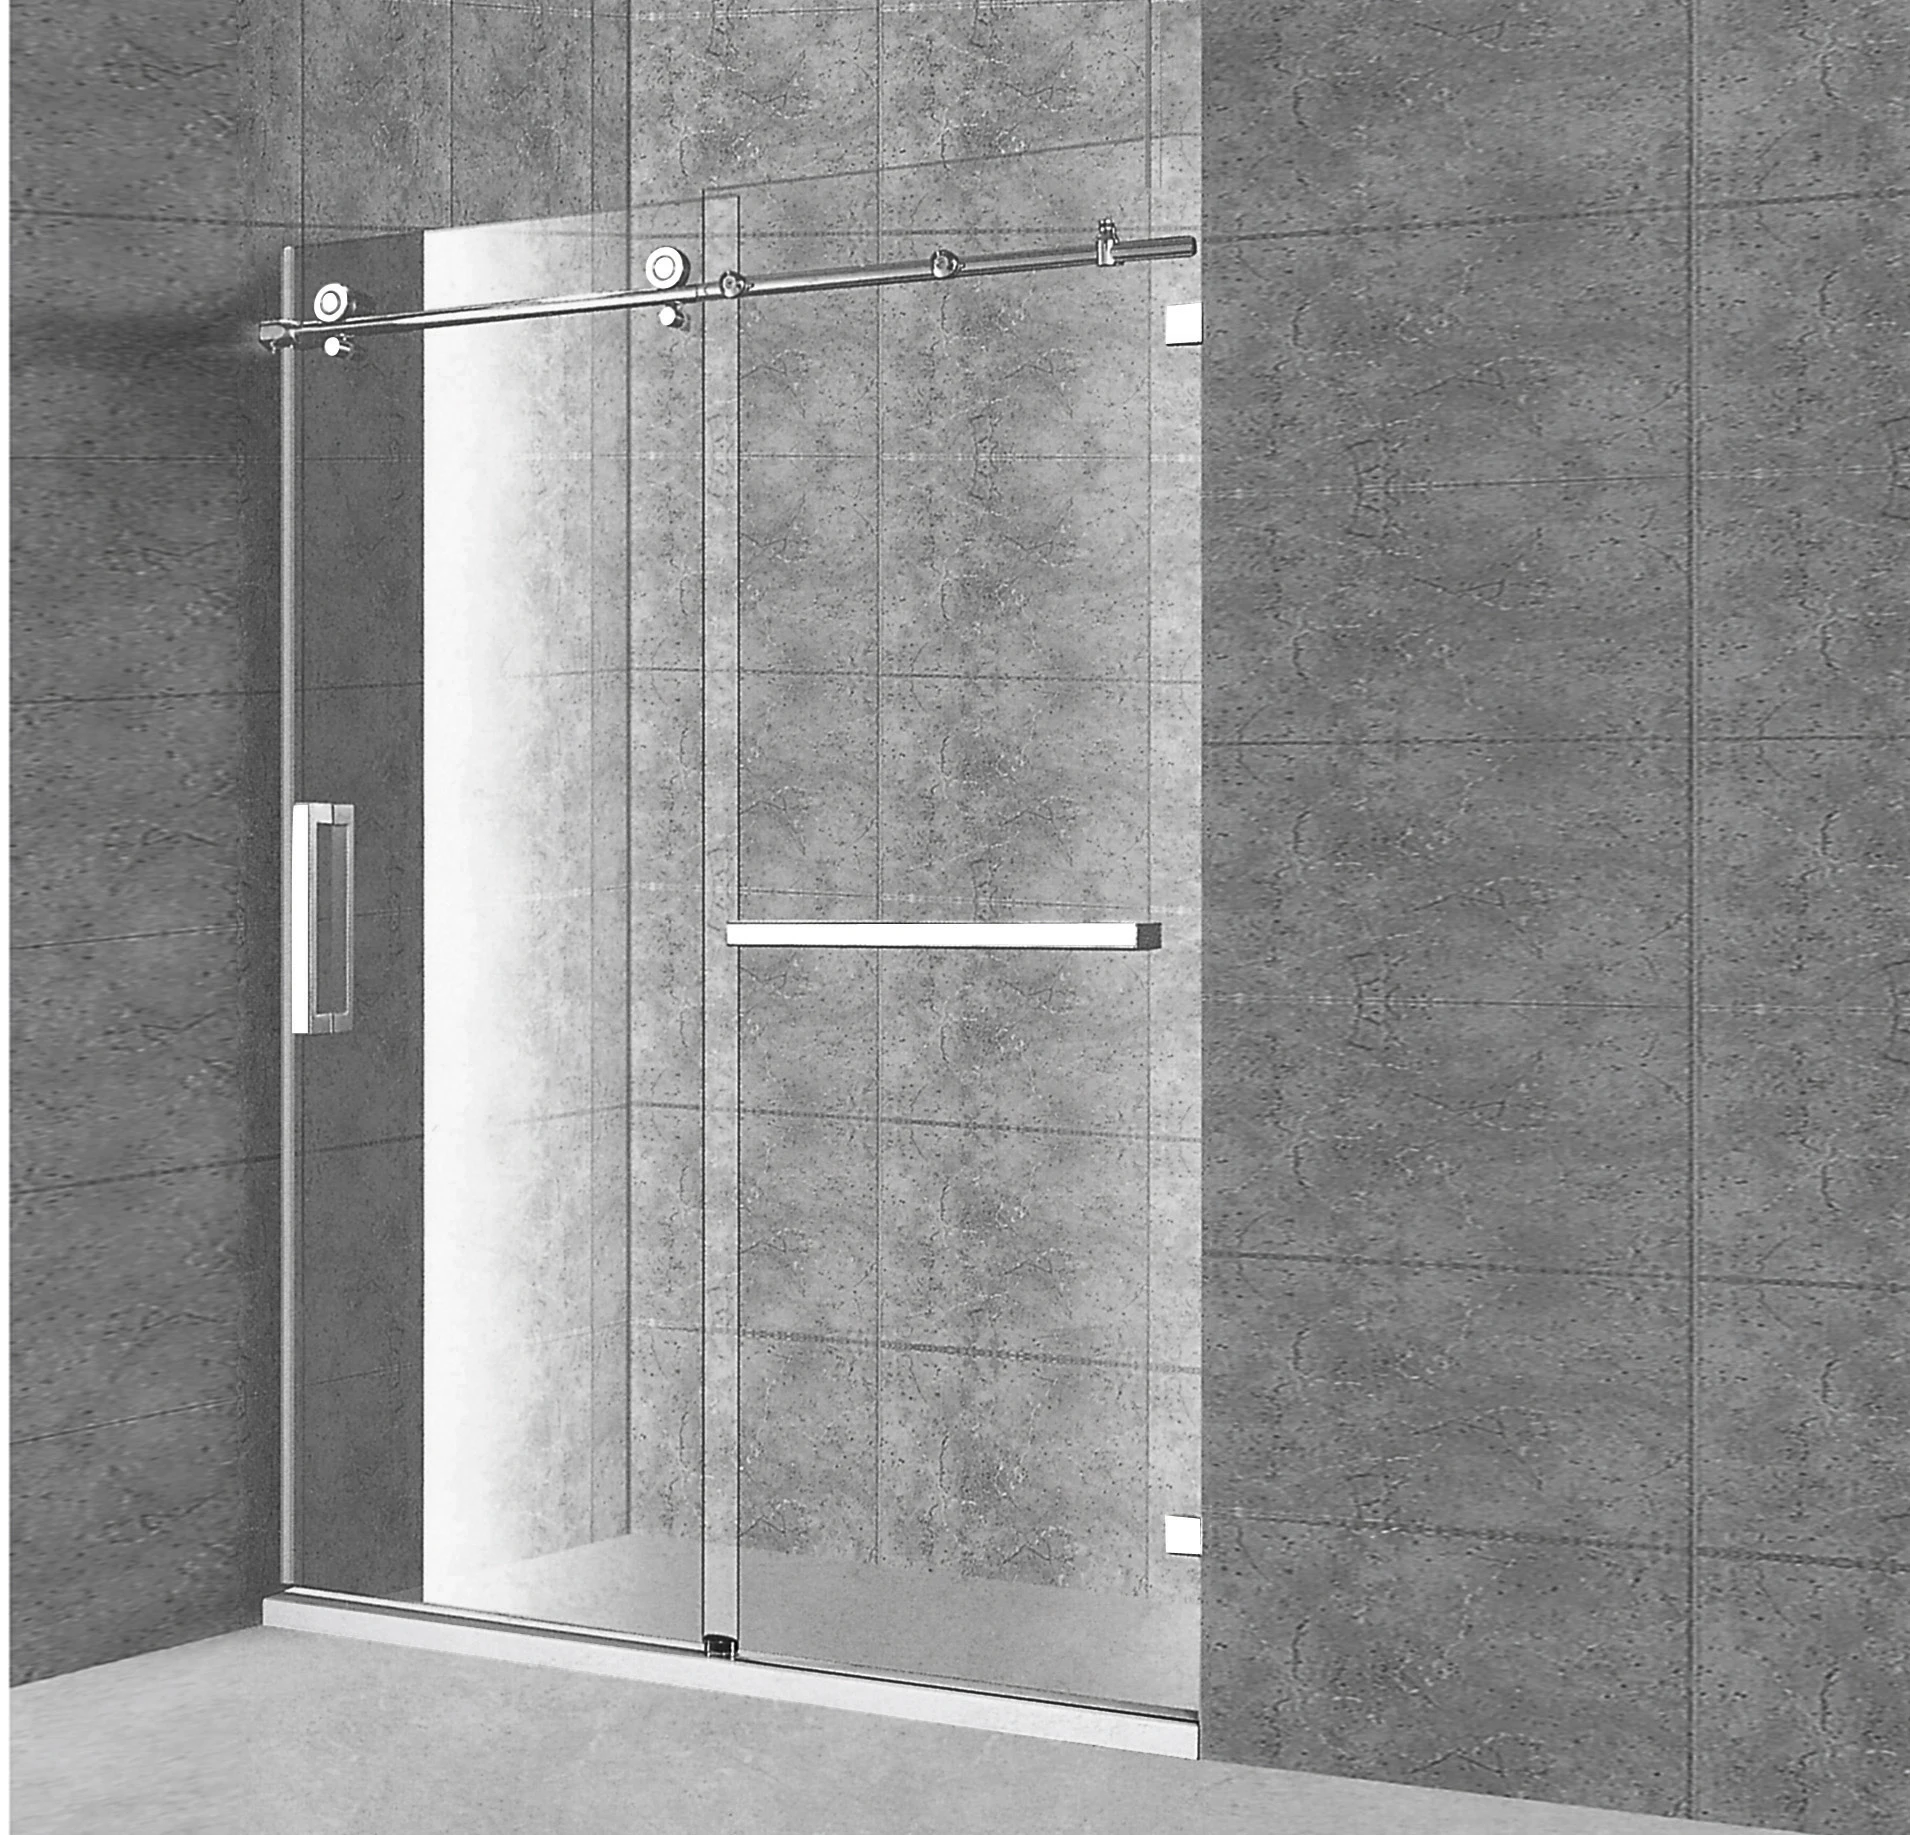 Frameless shower doors